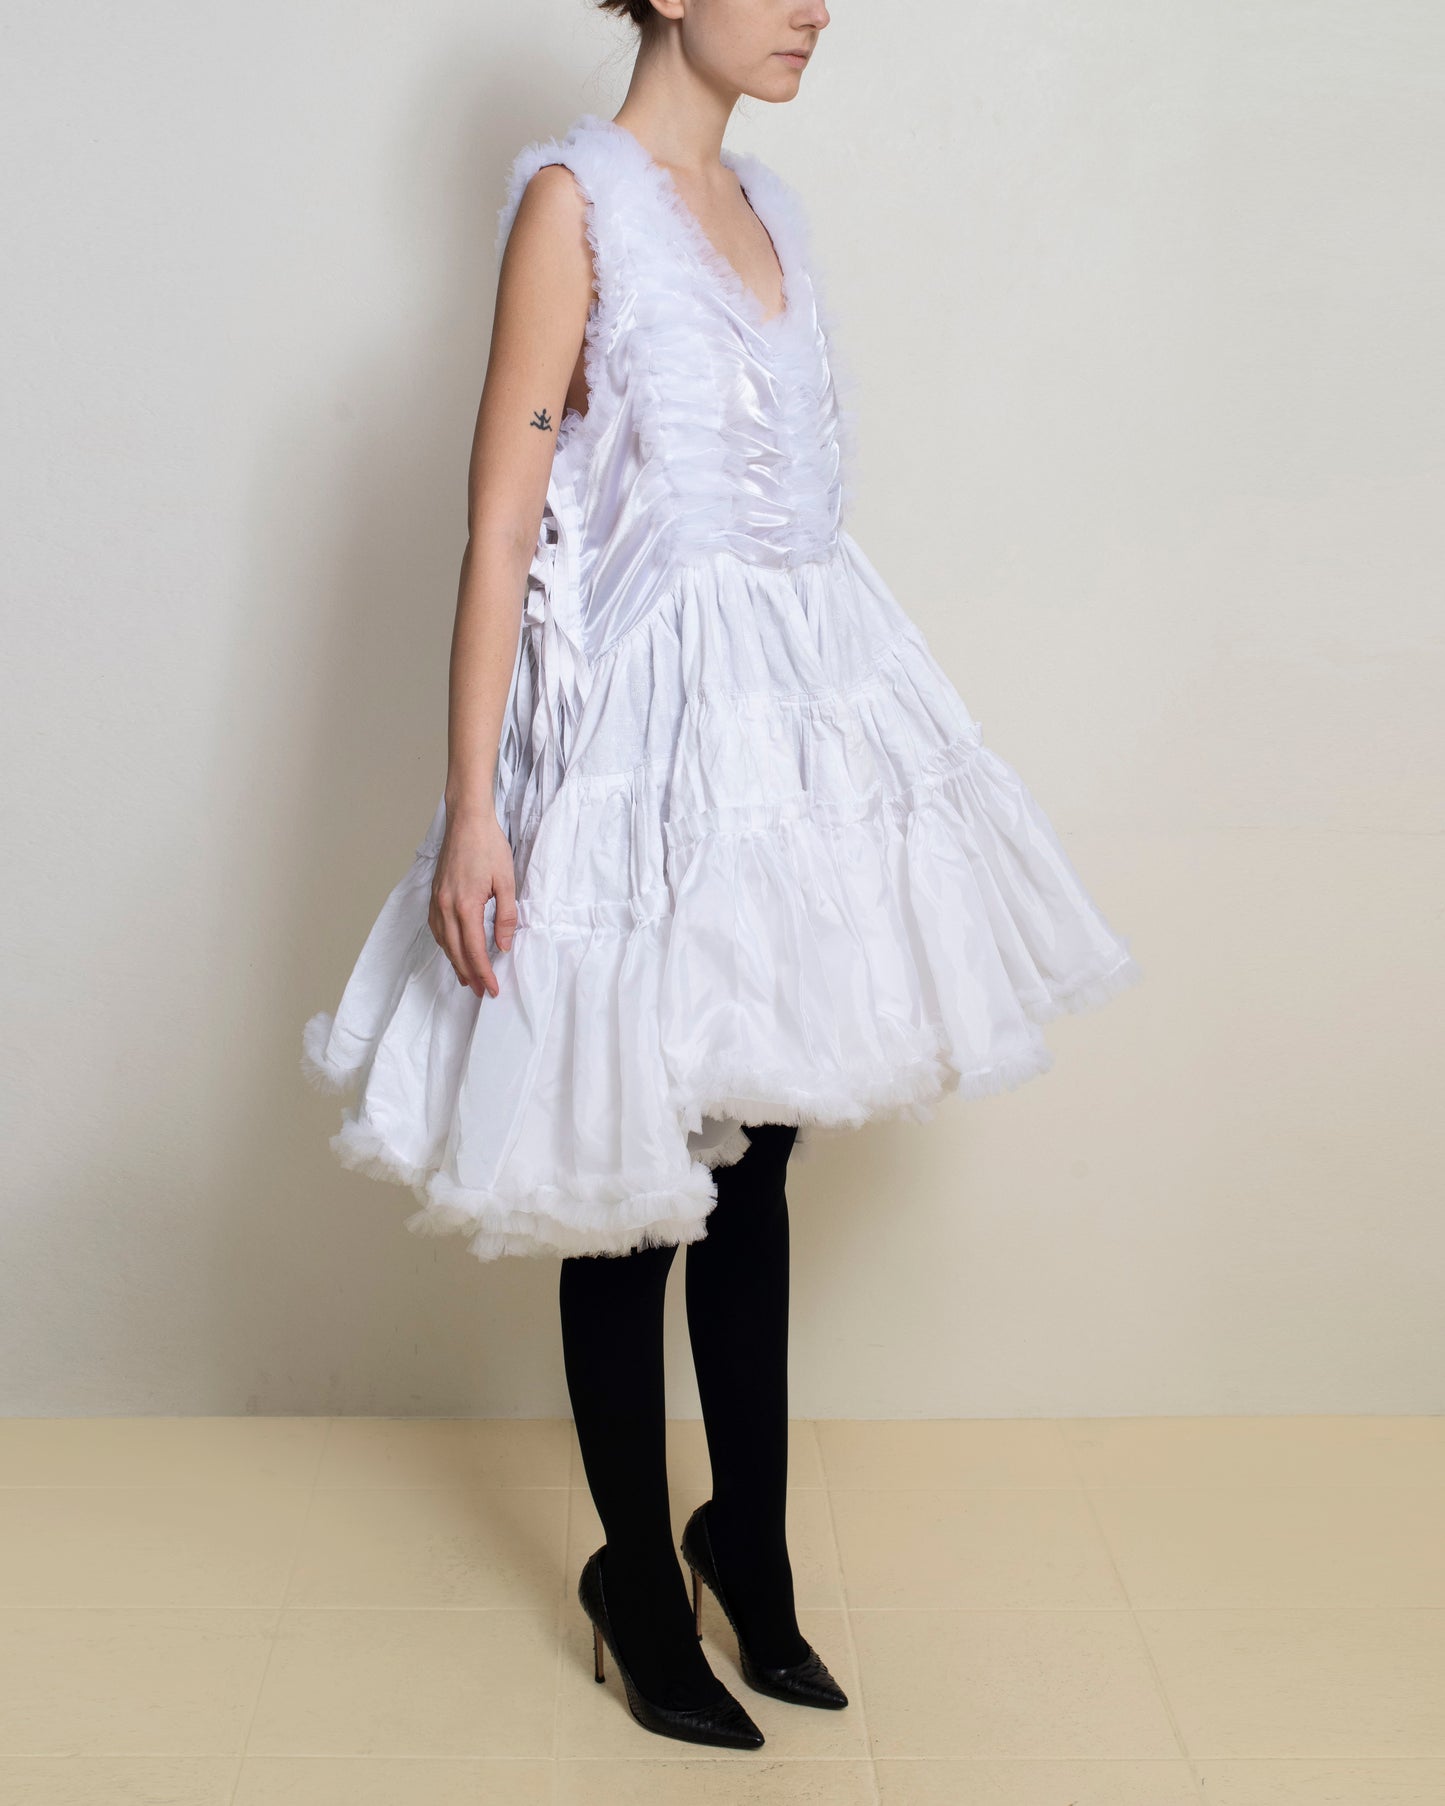 Meg Beck - White Tiered Dress